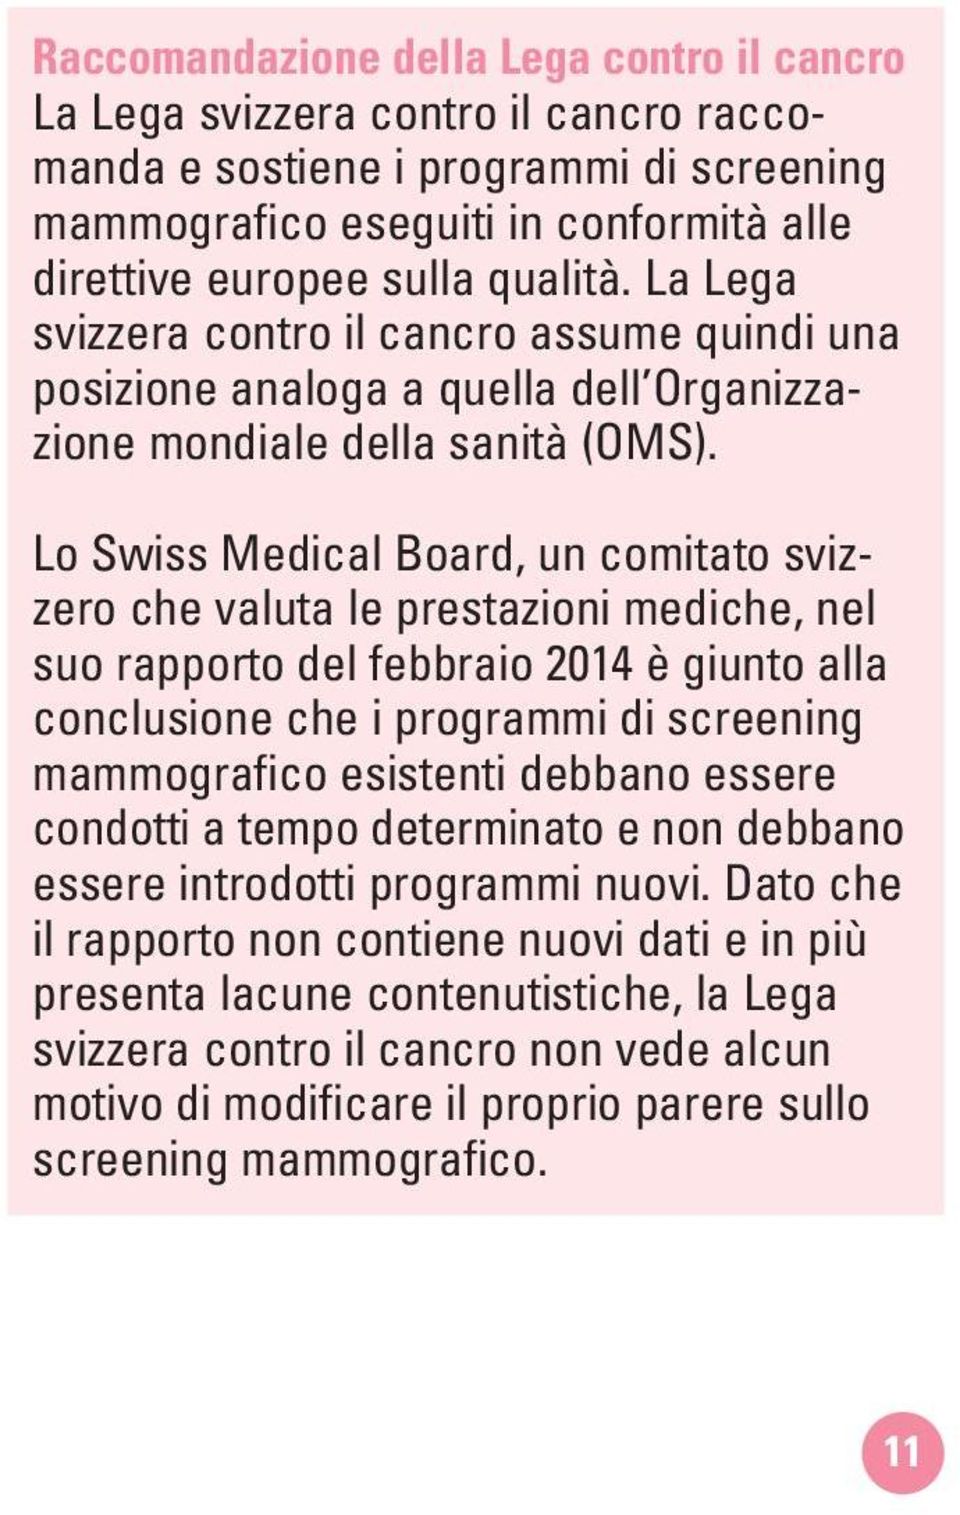 Lo Swiss Medical Board, un comitato svizzero che valuta le prestazioni mediche, nel suo rapporto del febbraio 2014 è giunto alla conclusione che i programmi di screening mammografico esistenti